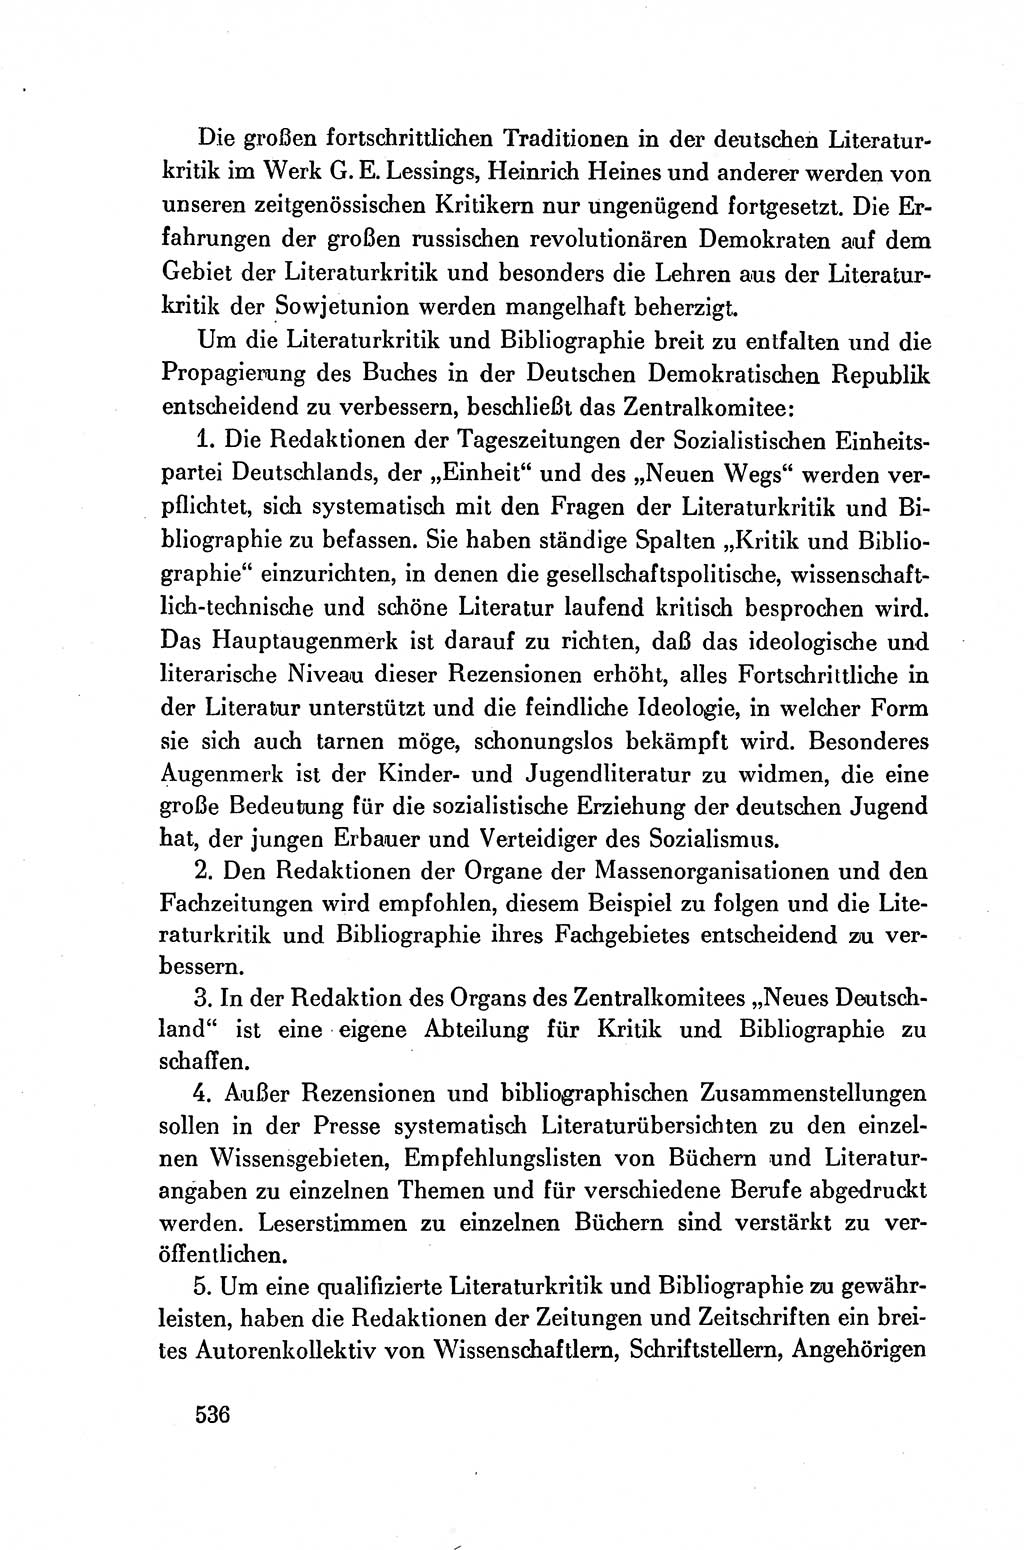 Dokumente der Sozialistischen Einheitspartei Deutschlands (SED) [Deutsche Demokratische Republik (DDR)] 1954-1955, Seite 536 (Dok. SED DDR 1954-1955, S. 536)